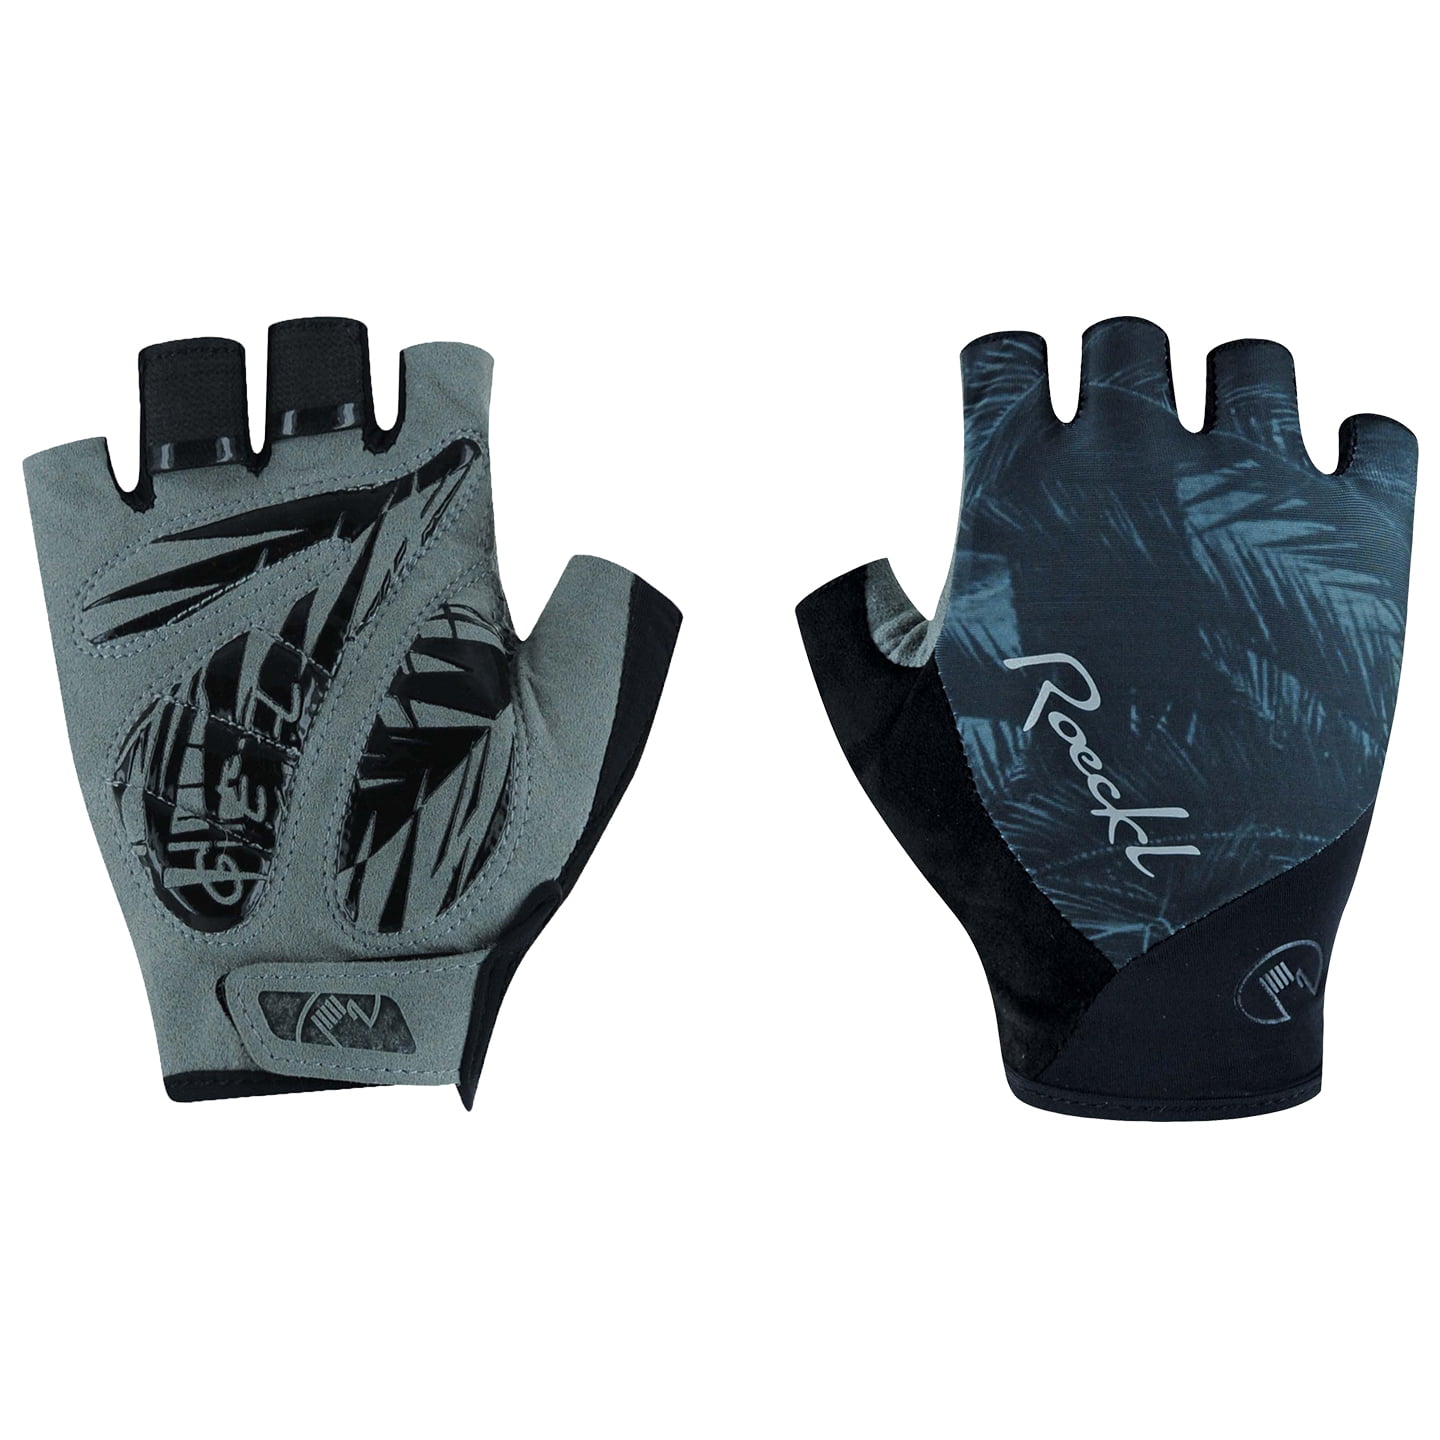 ROECKL Danis Women’s Gloves Women’s Cycling Gloves, size 8, Bike gloves, Cycling wear